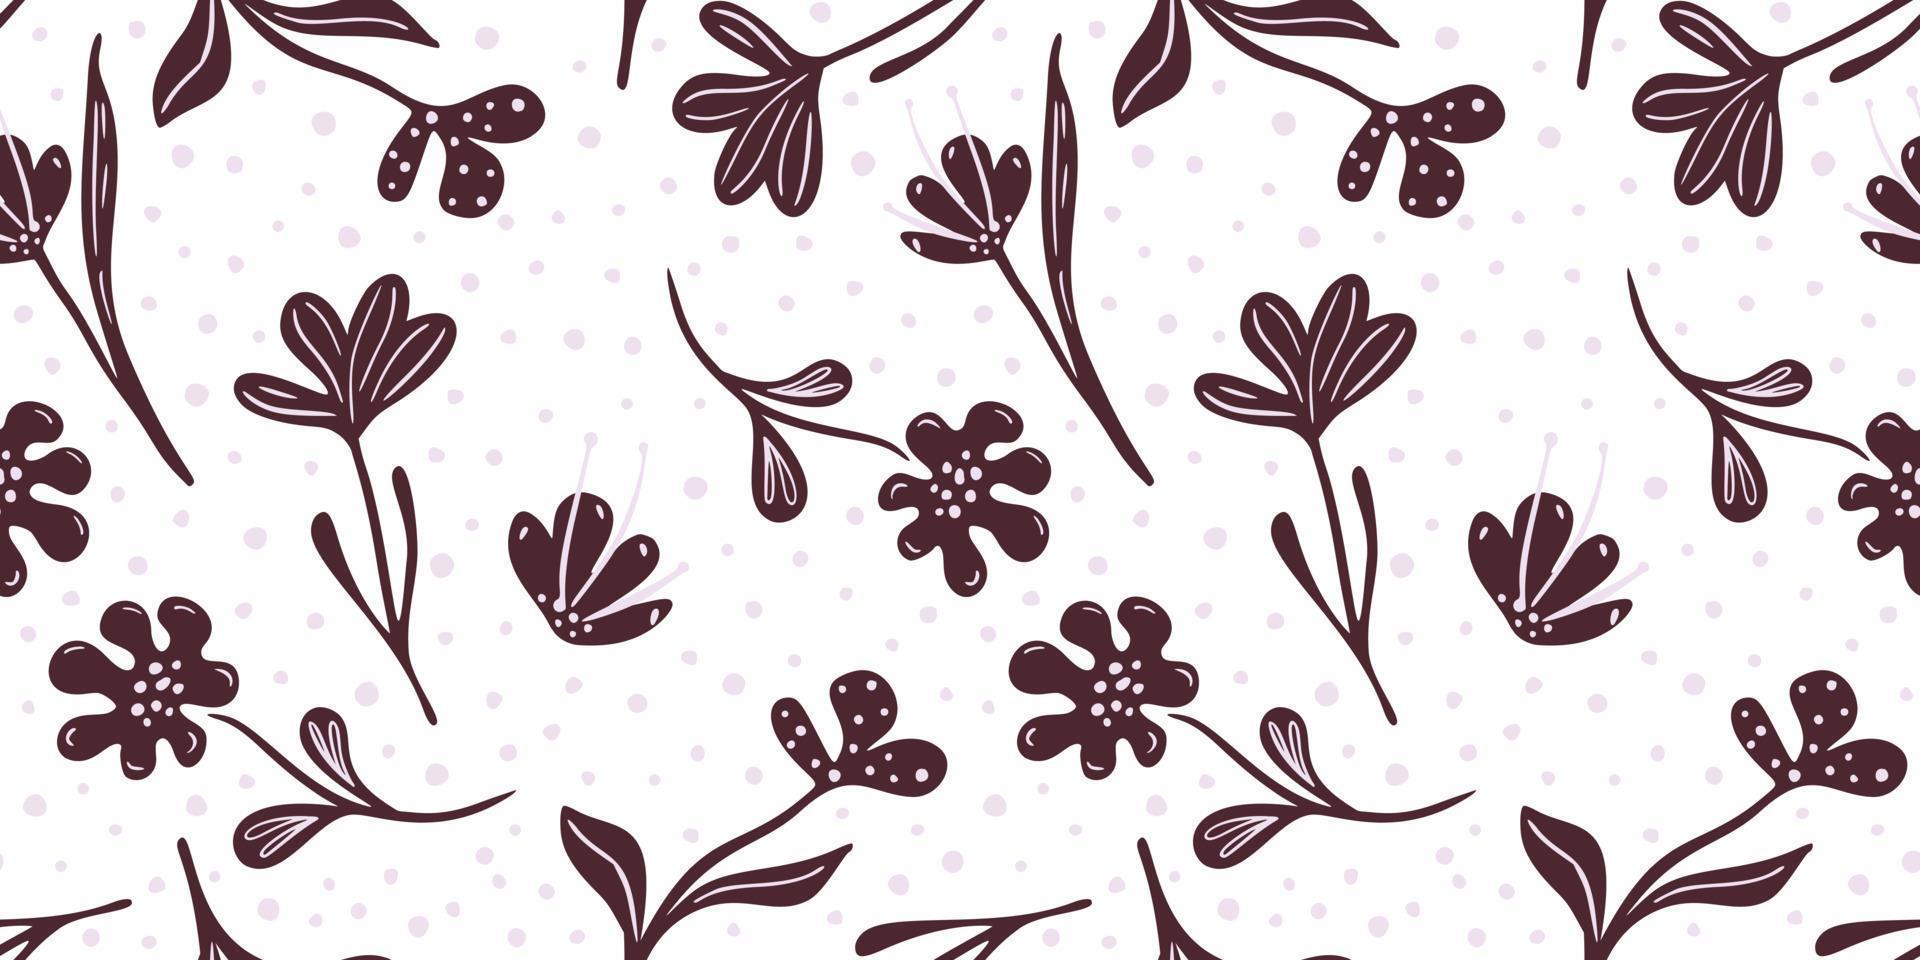 padrão sem emenda floral abstrato sobre fundo branco. prado de flores marrons em estilo doodle. vetor